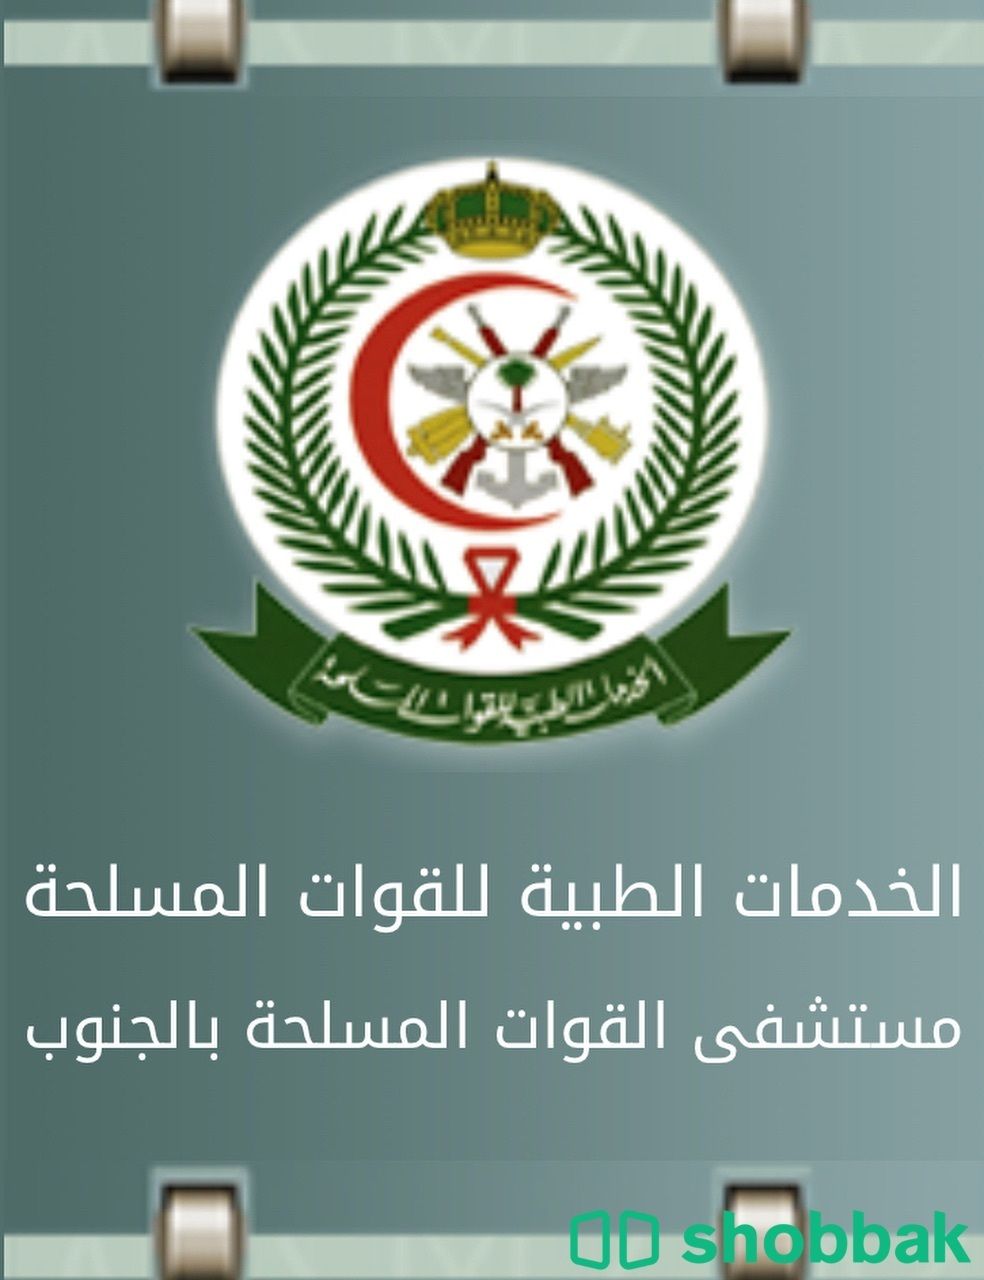 حجز مواعيد في مستشفى القوات المسلحة بالجنوب  Shobbak Saudi Arabia